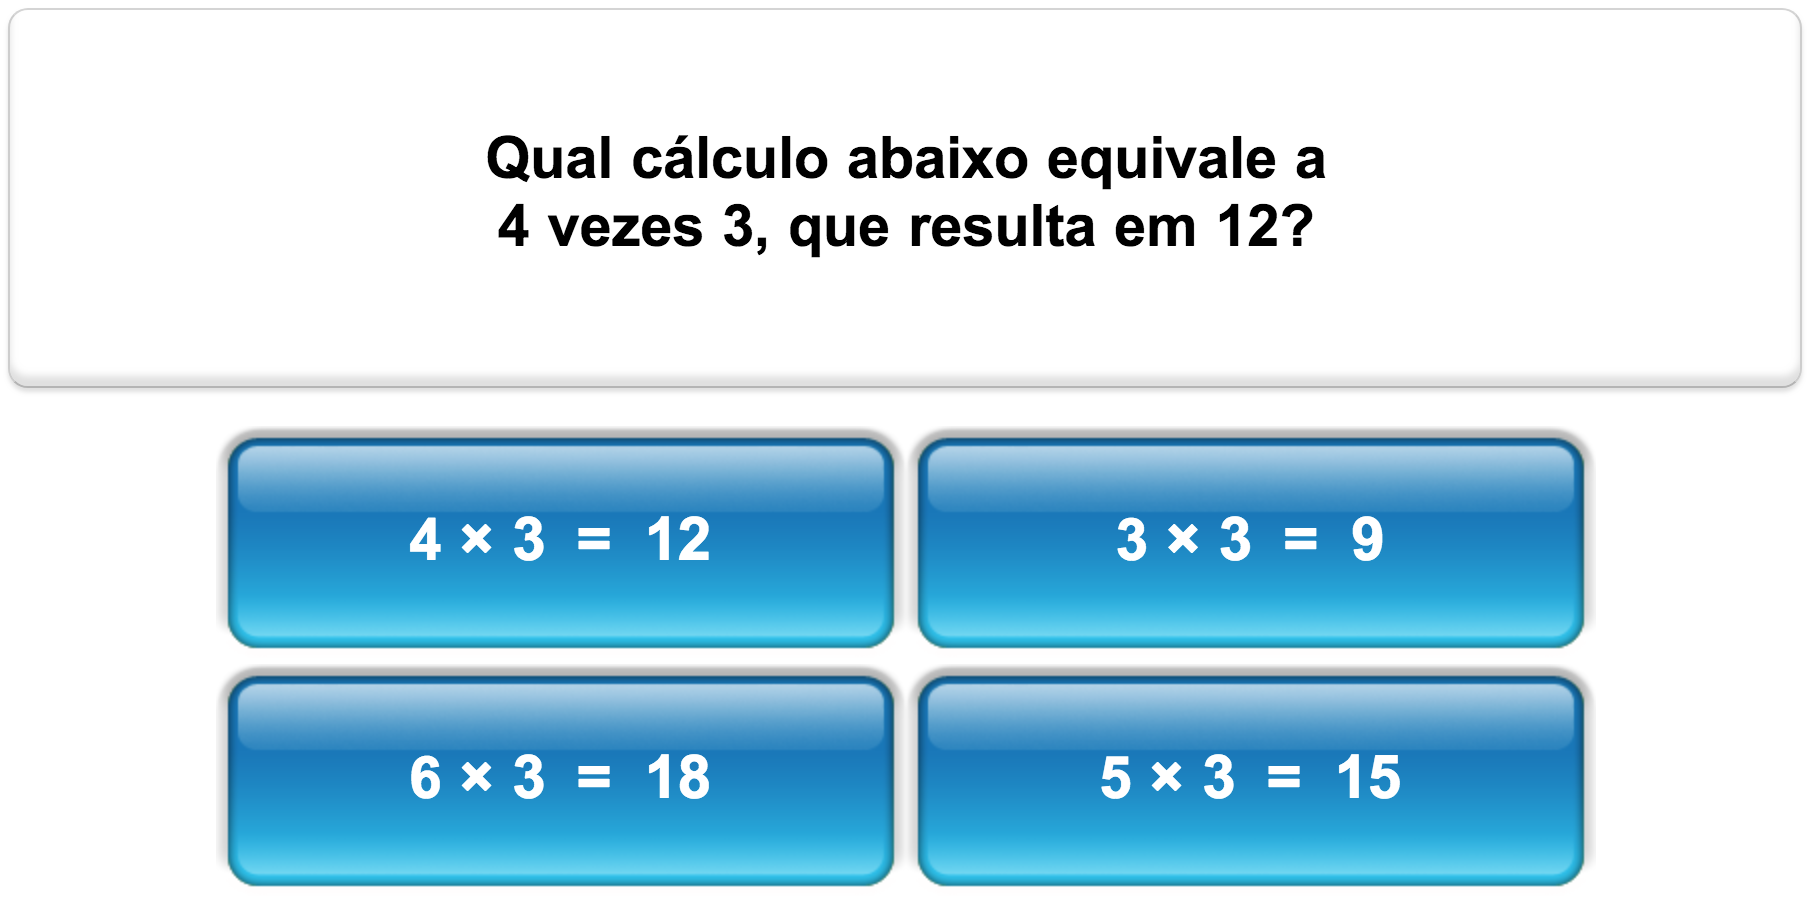 Quiz de Matemática, Multiplicação